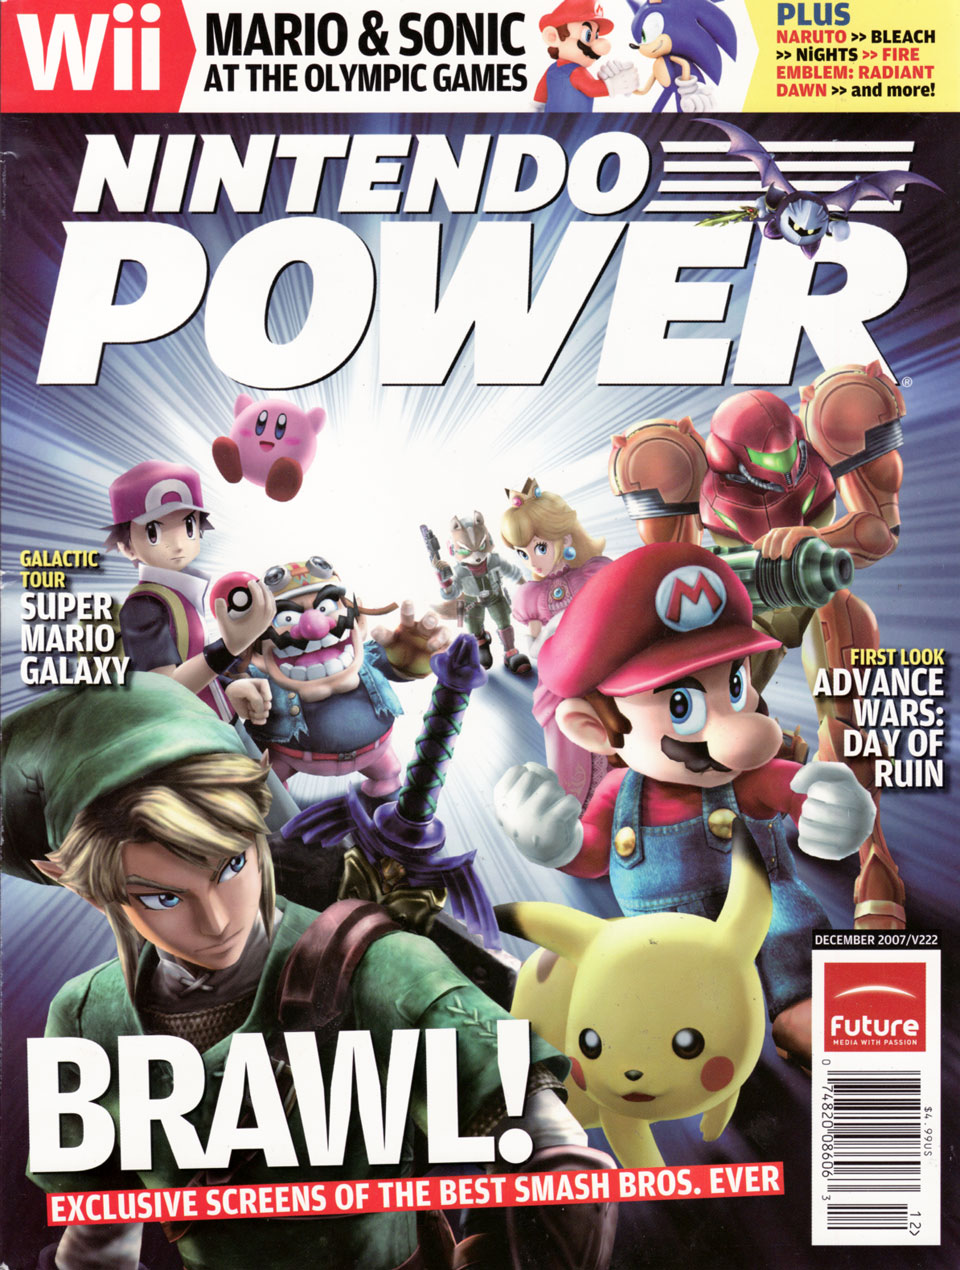 Nintendo power. Nintendo Power журнал. Nintendo Brawl. Brawl на Нинтендо.